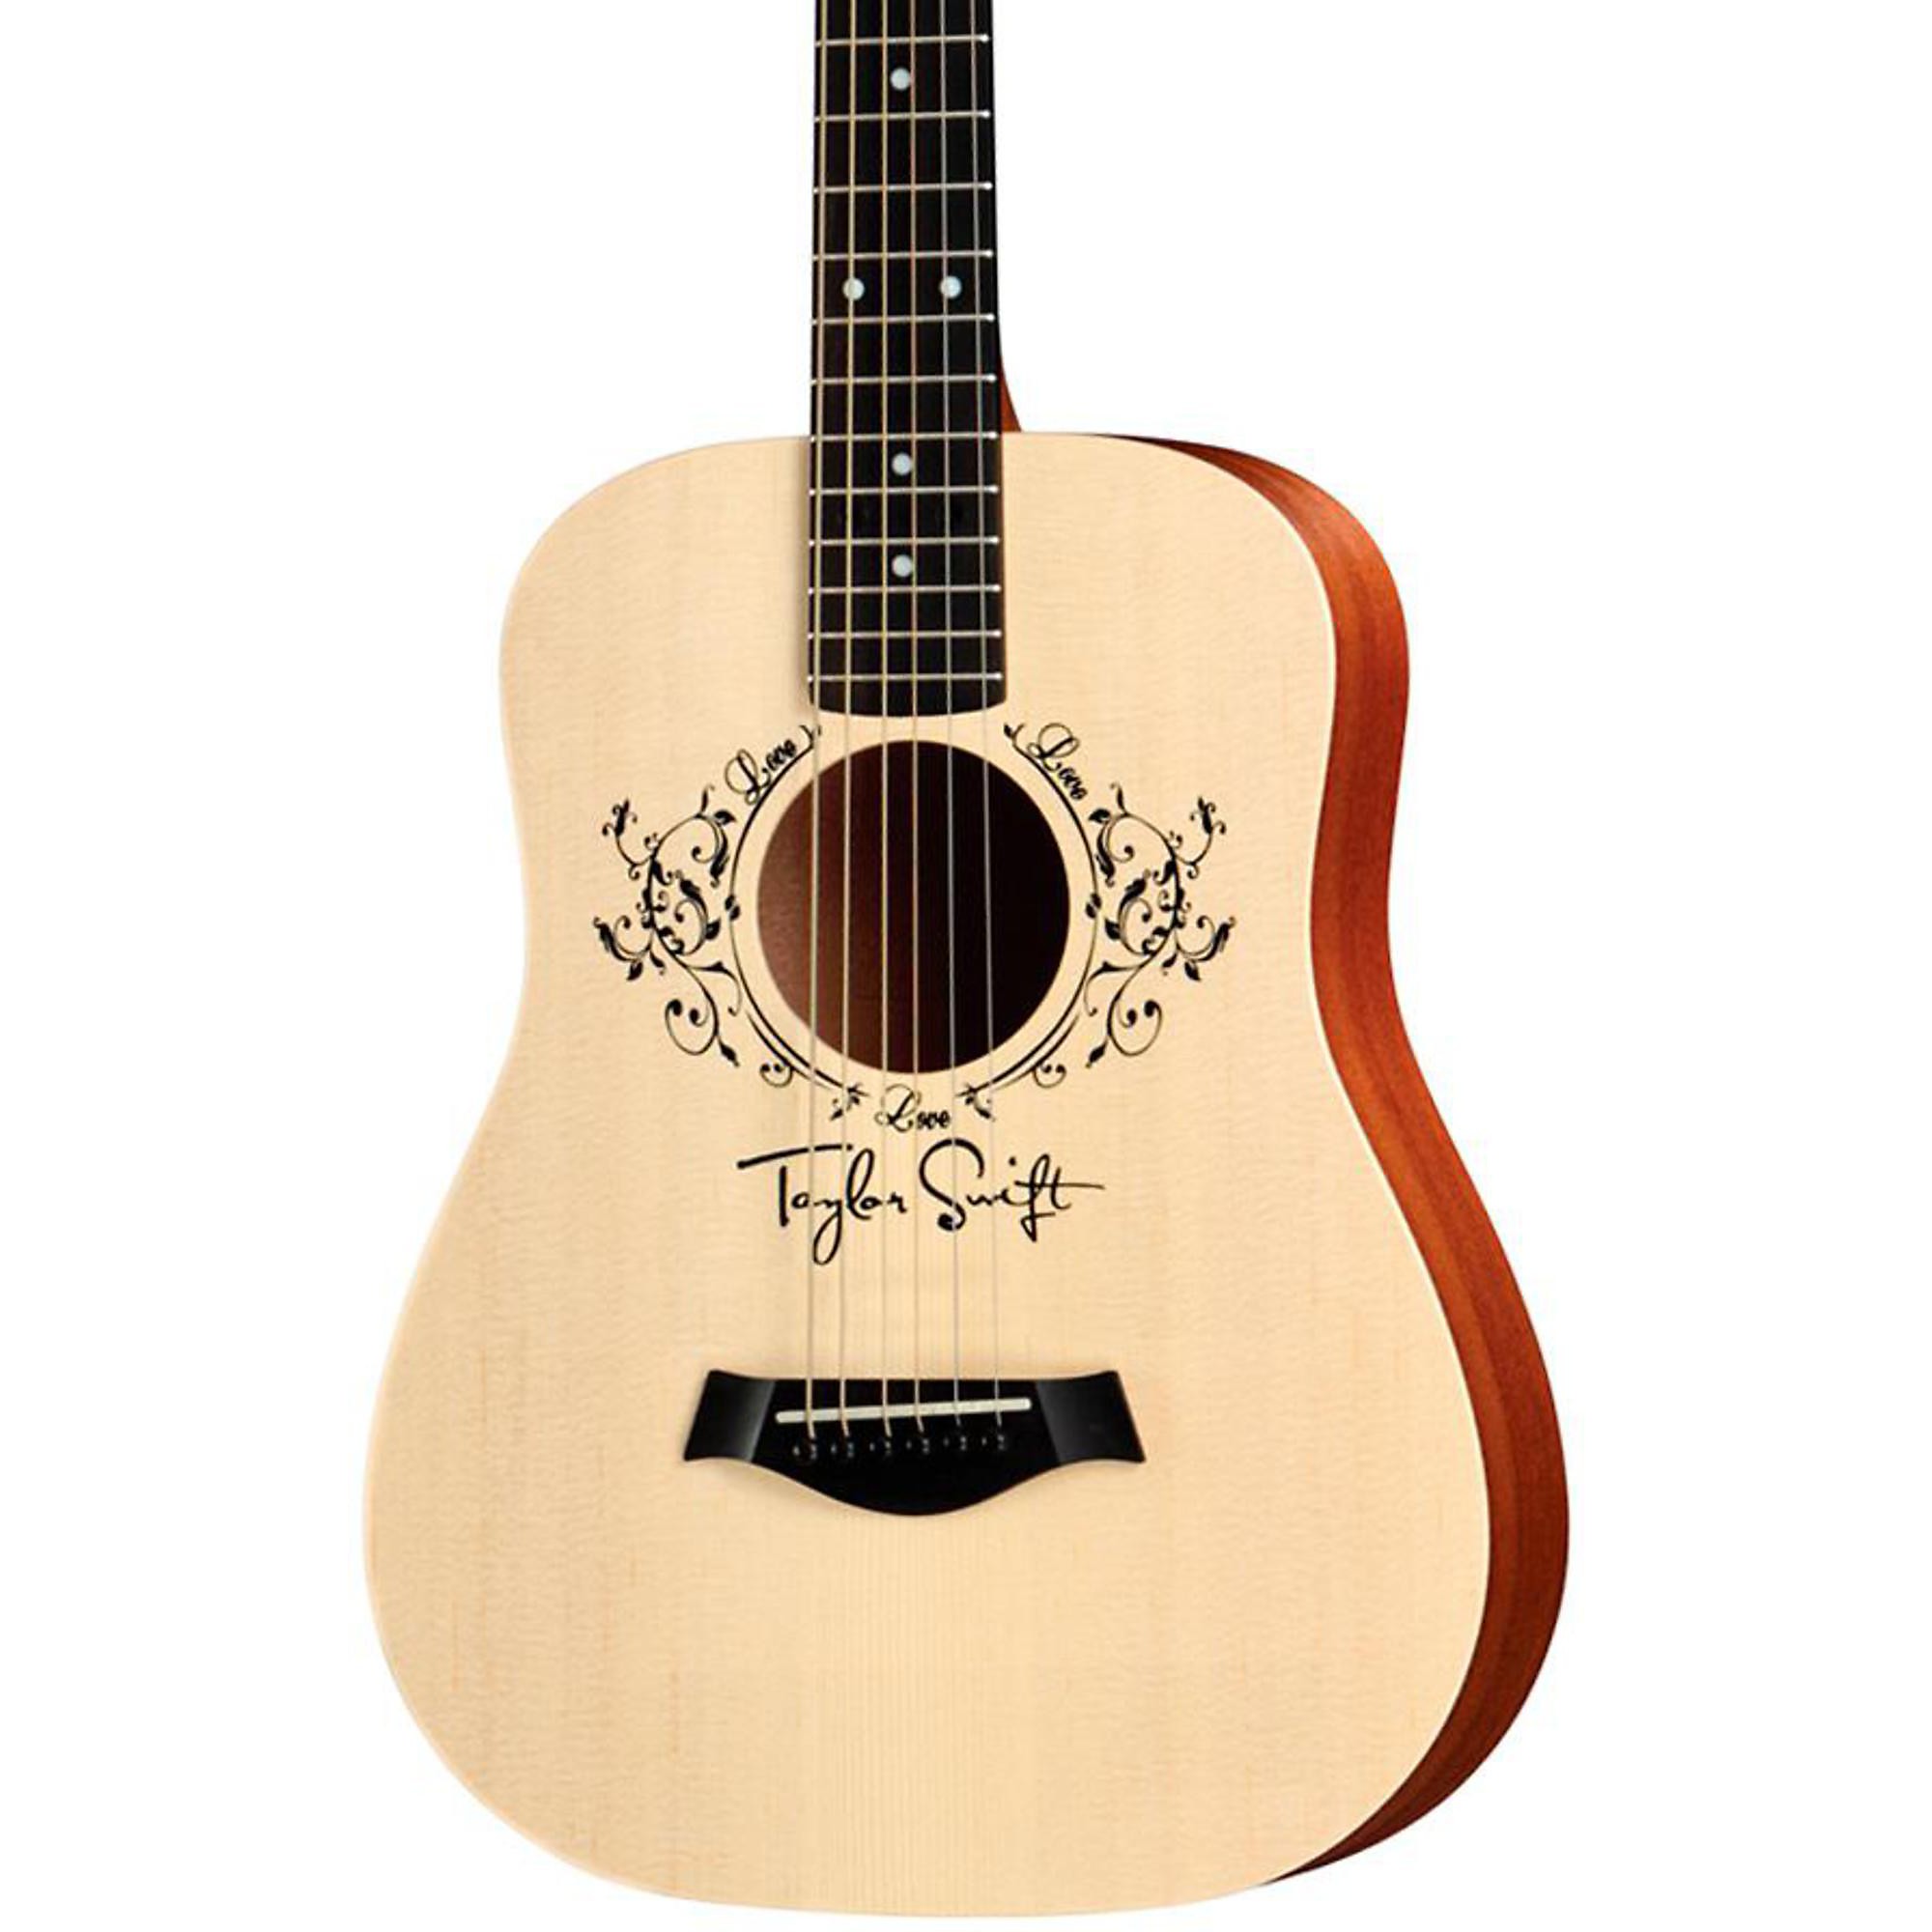 Акустическая гитара Taylor Taylor Swift Signature Baby, размер 3/4, дредноут акустическая гитара taylor ts bt taylor swift baby taylor